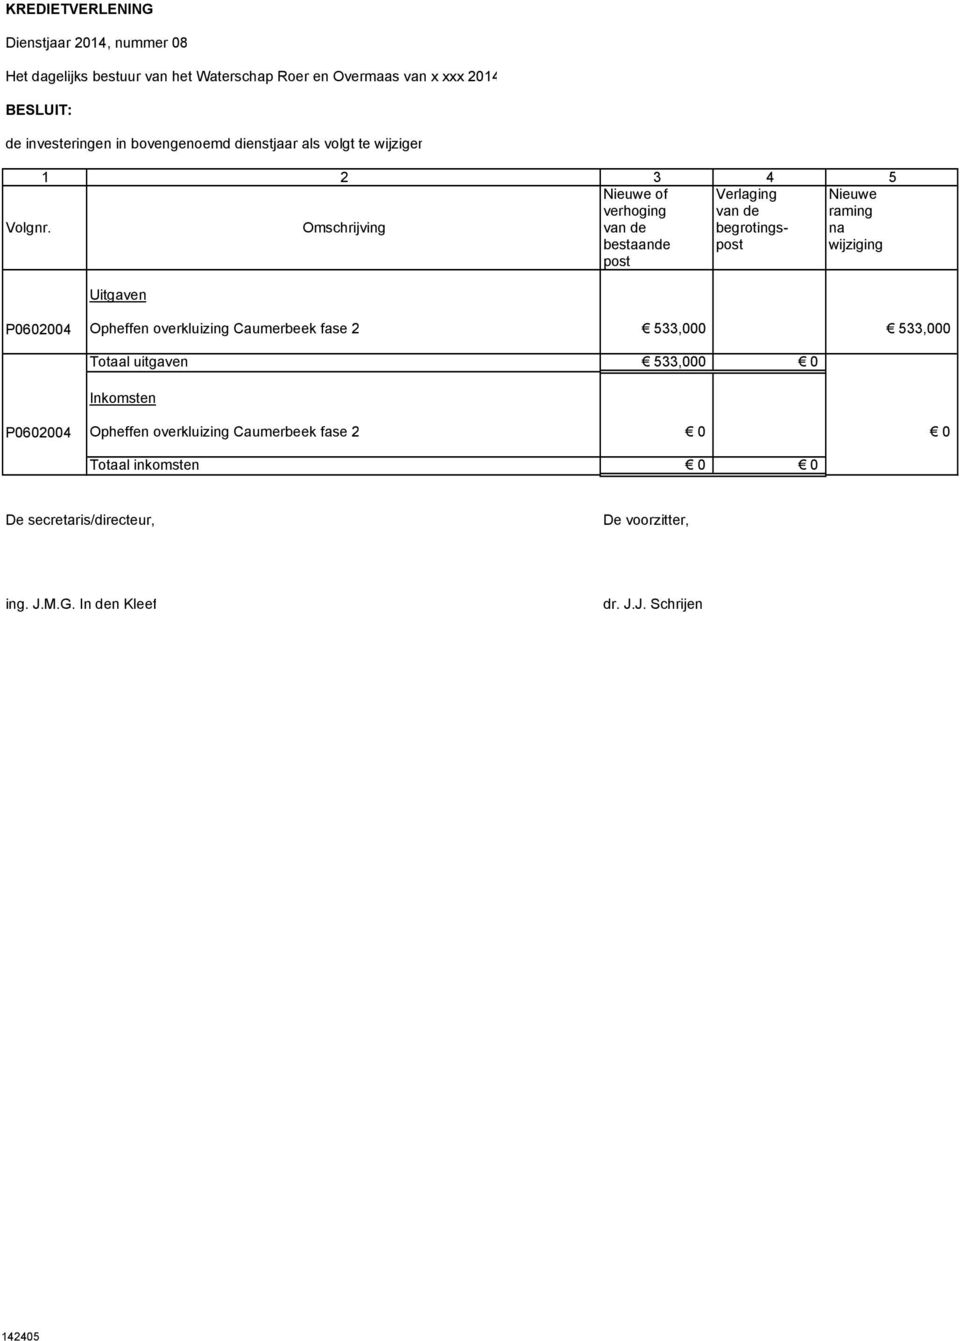 Omschrijving van de begrotings- na bestaande post wijziging post Uitgaven P0602004 Opheffen overkluizing Caumerbeek fase 2 533,000 533,000 Totaal